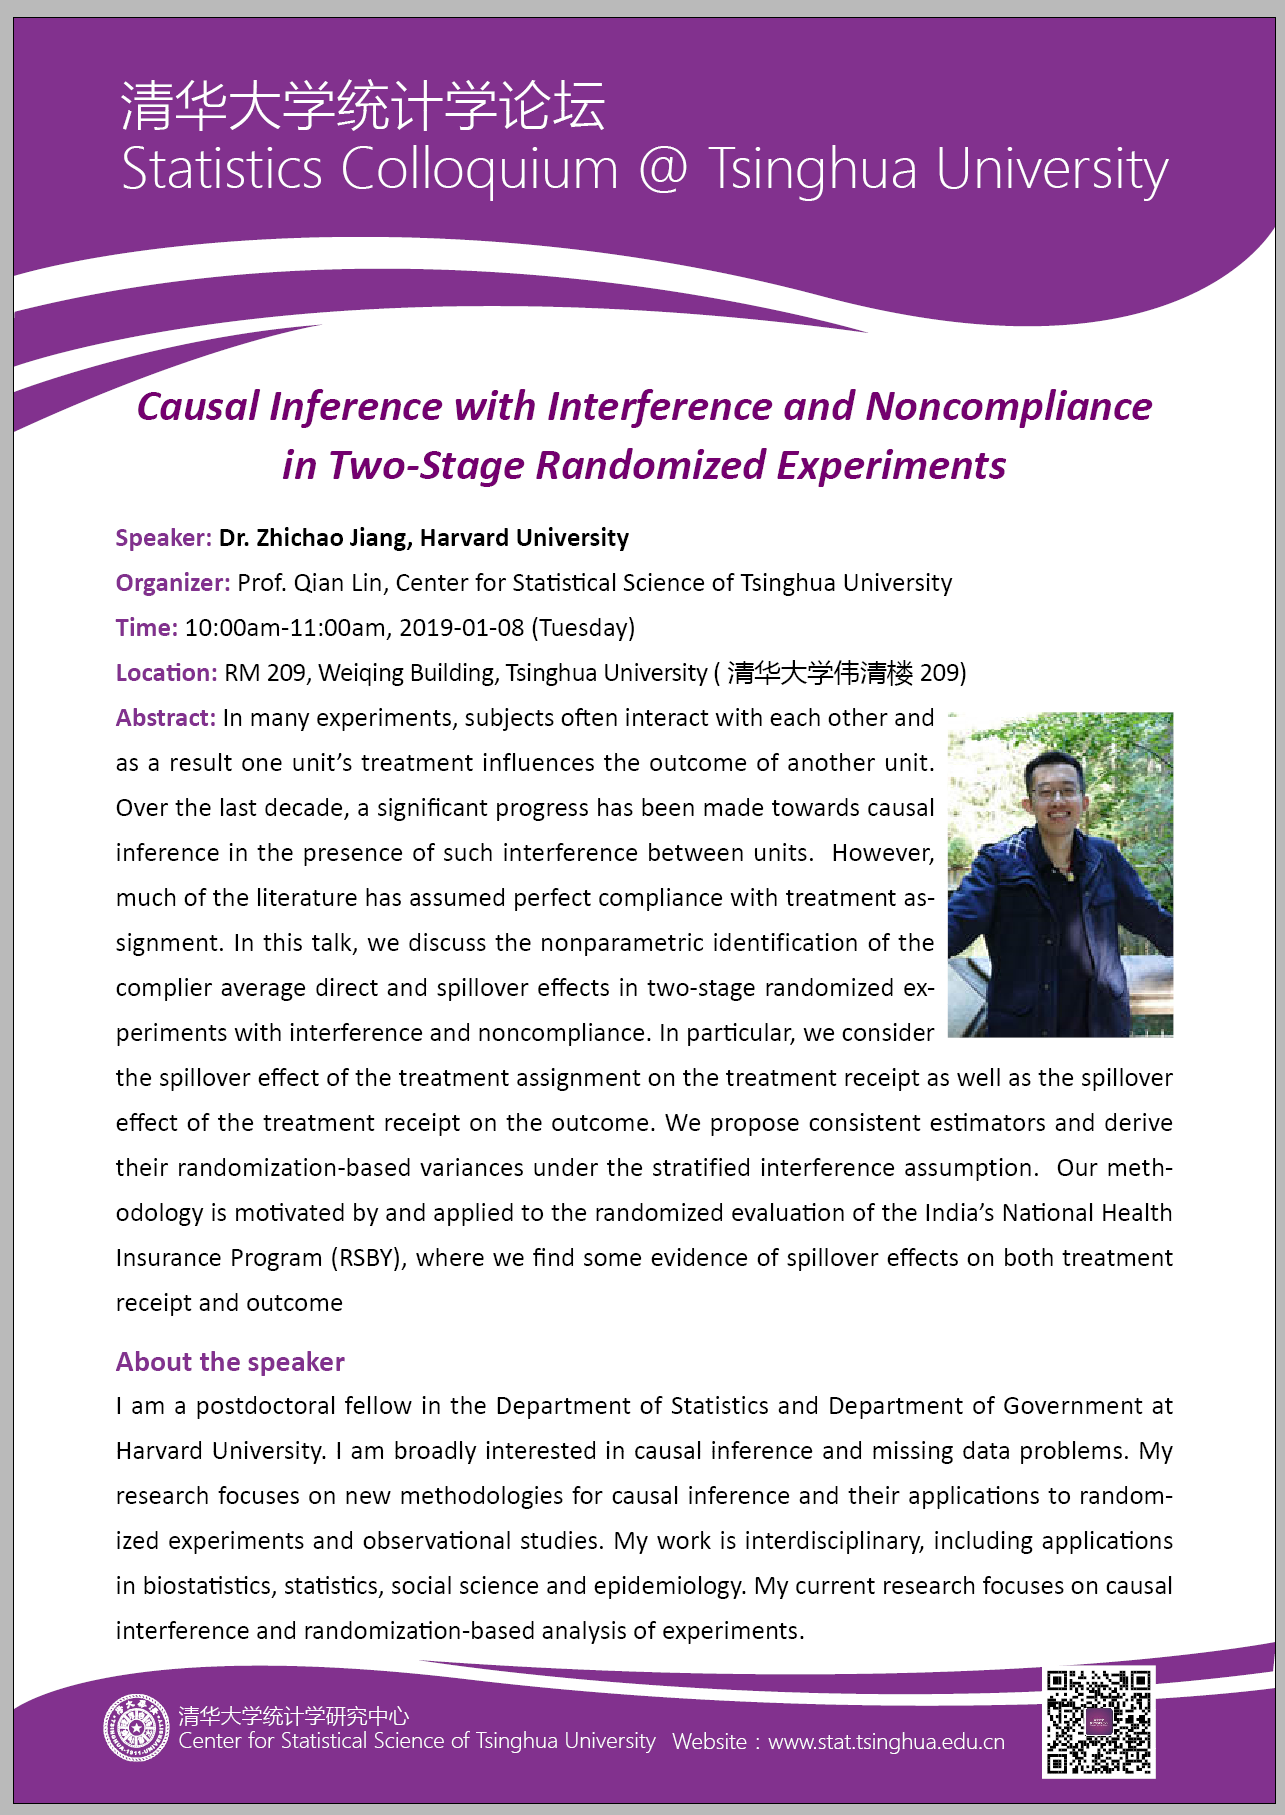 【统计学论坛】Causal Inference with Interference and Noncompliance in Two-Stage Randomized Experiments